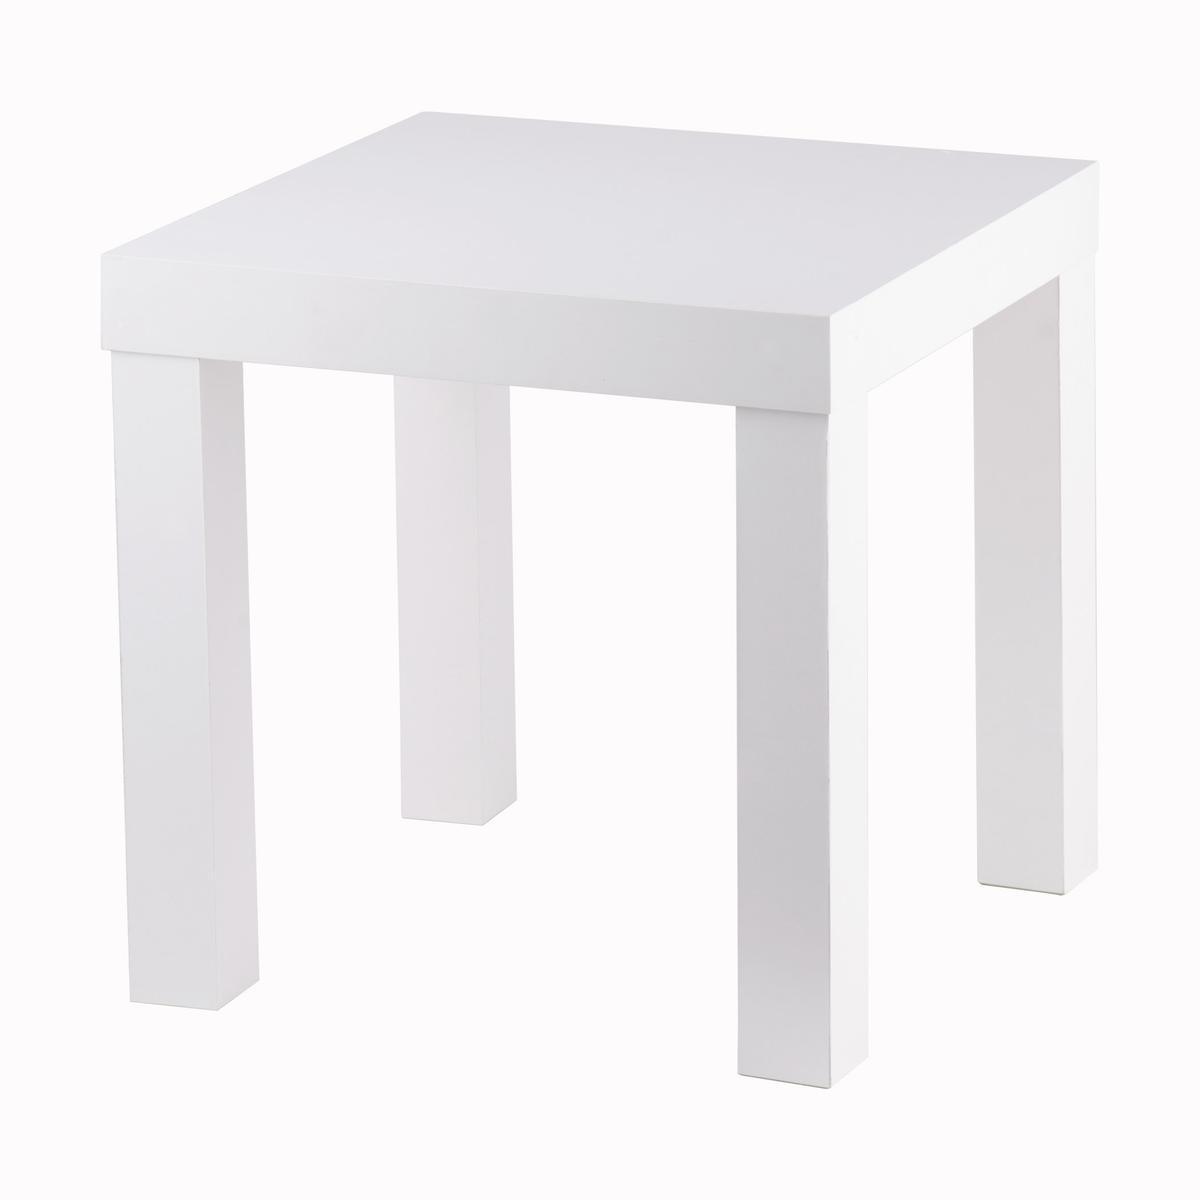 Table d'appoint - Panneau de particules - 39 x 39 x H 37 cm - Blanc